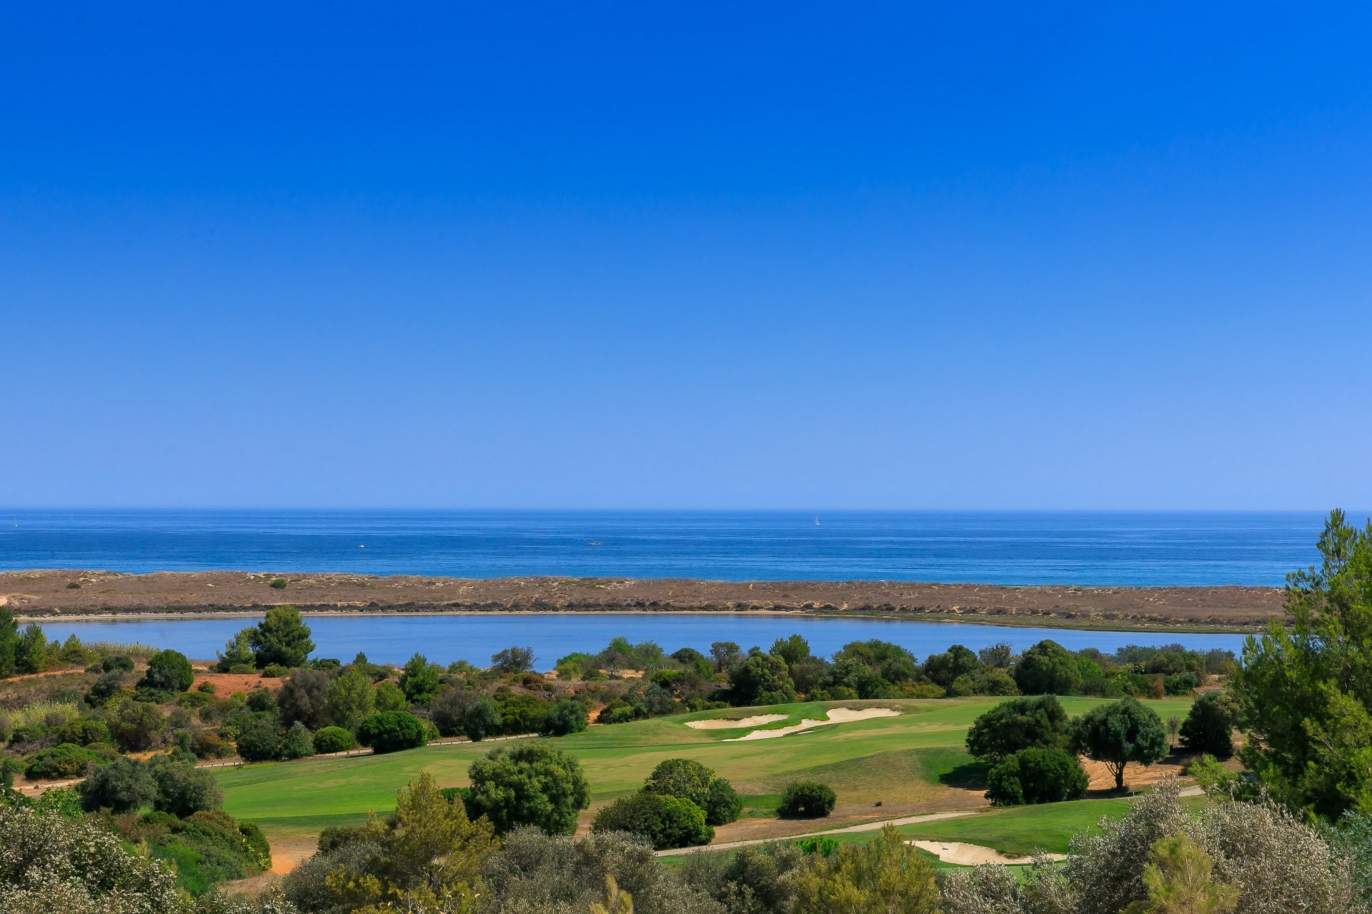 Terrain à vendre dans un complexe de golf, Lagos, Algarve, Portugal_123000